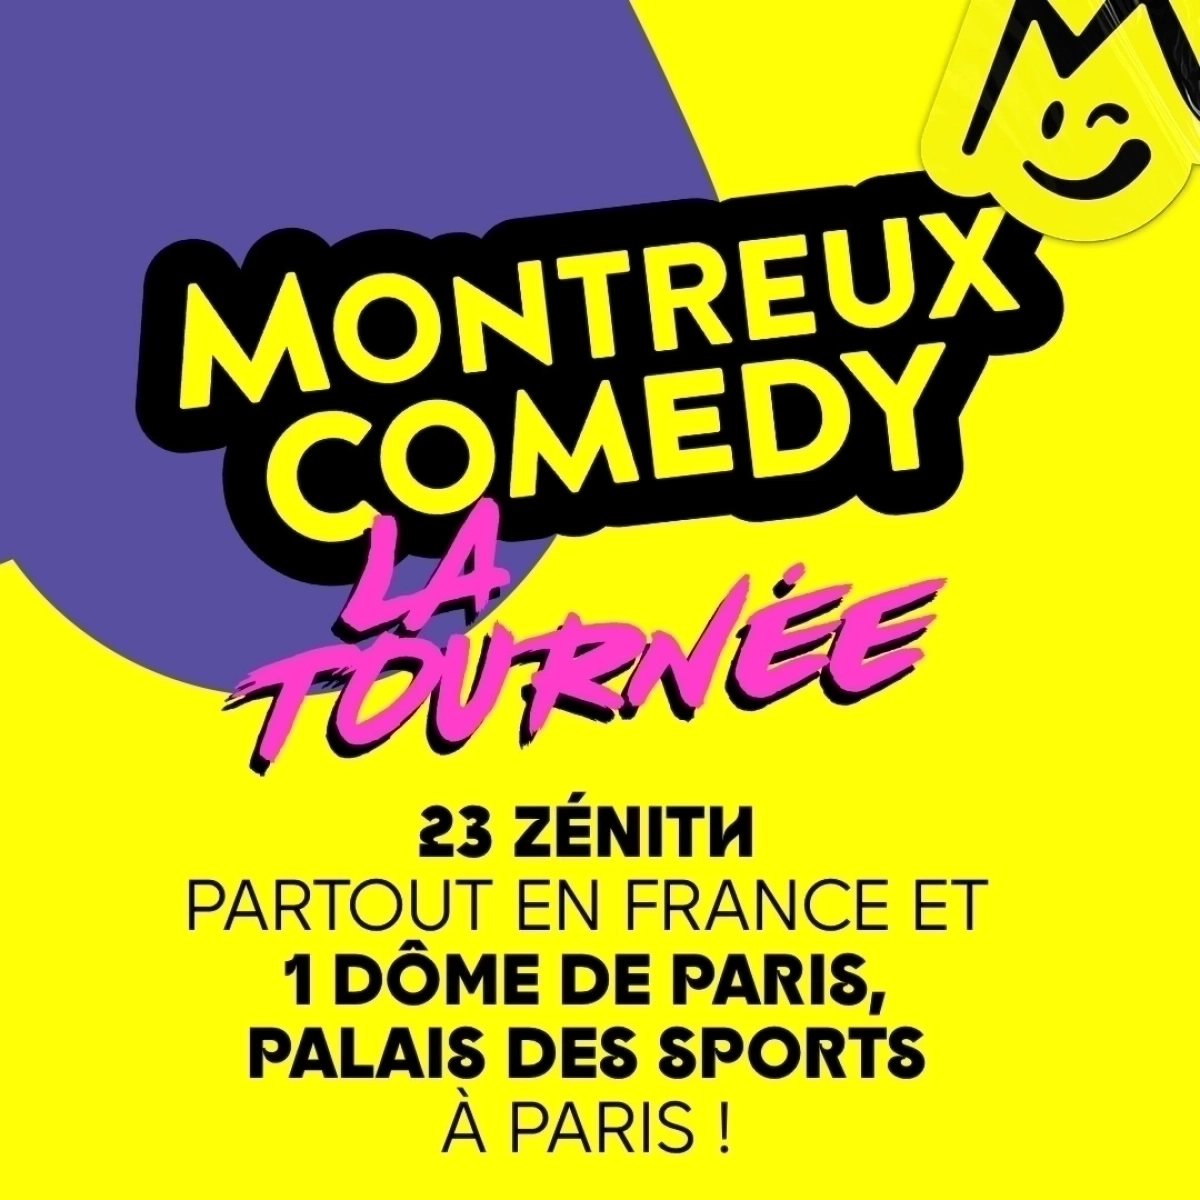 Montreux Comedy - La Tournée al Narbonne Arena Tickets